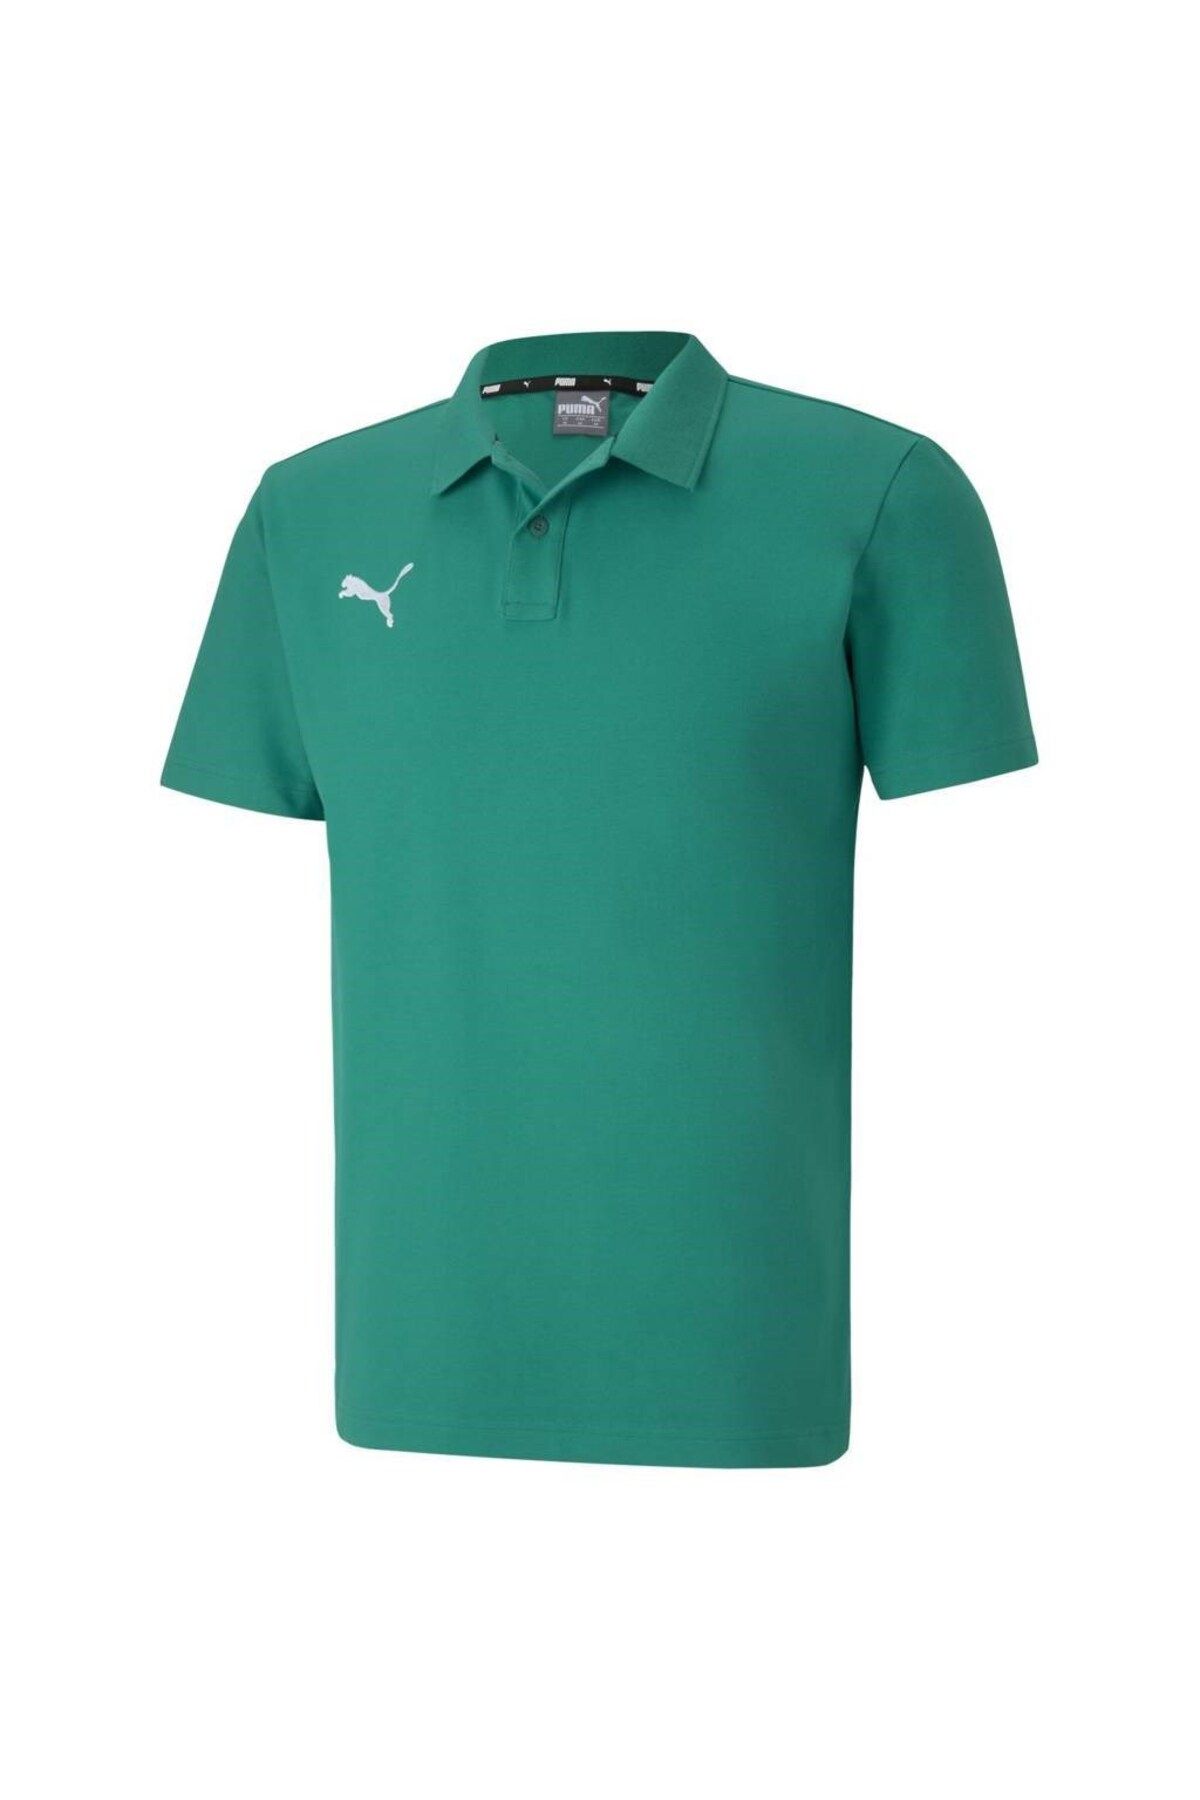 Puma Team Goal 23 Casuals Erkek Yeşil Polo Tişört